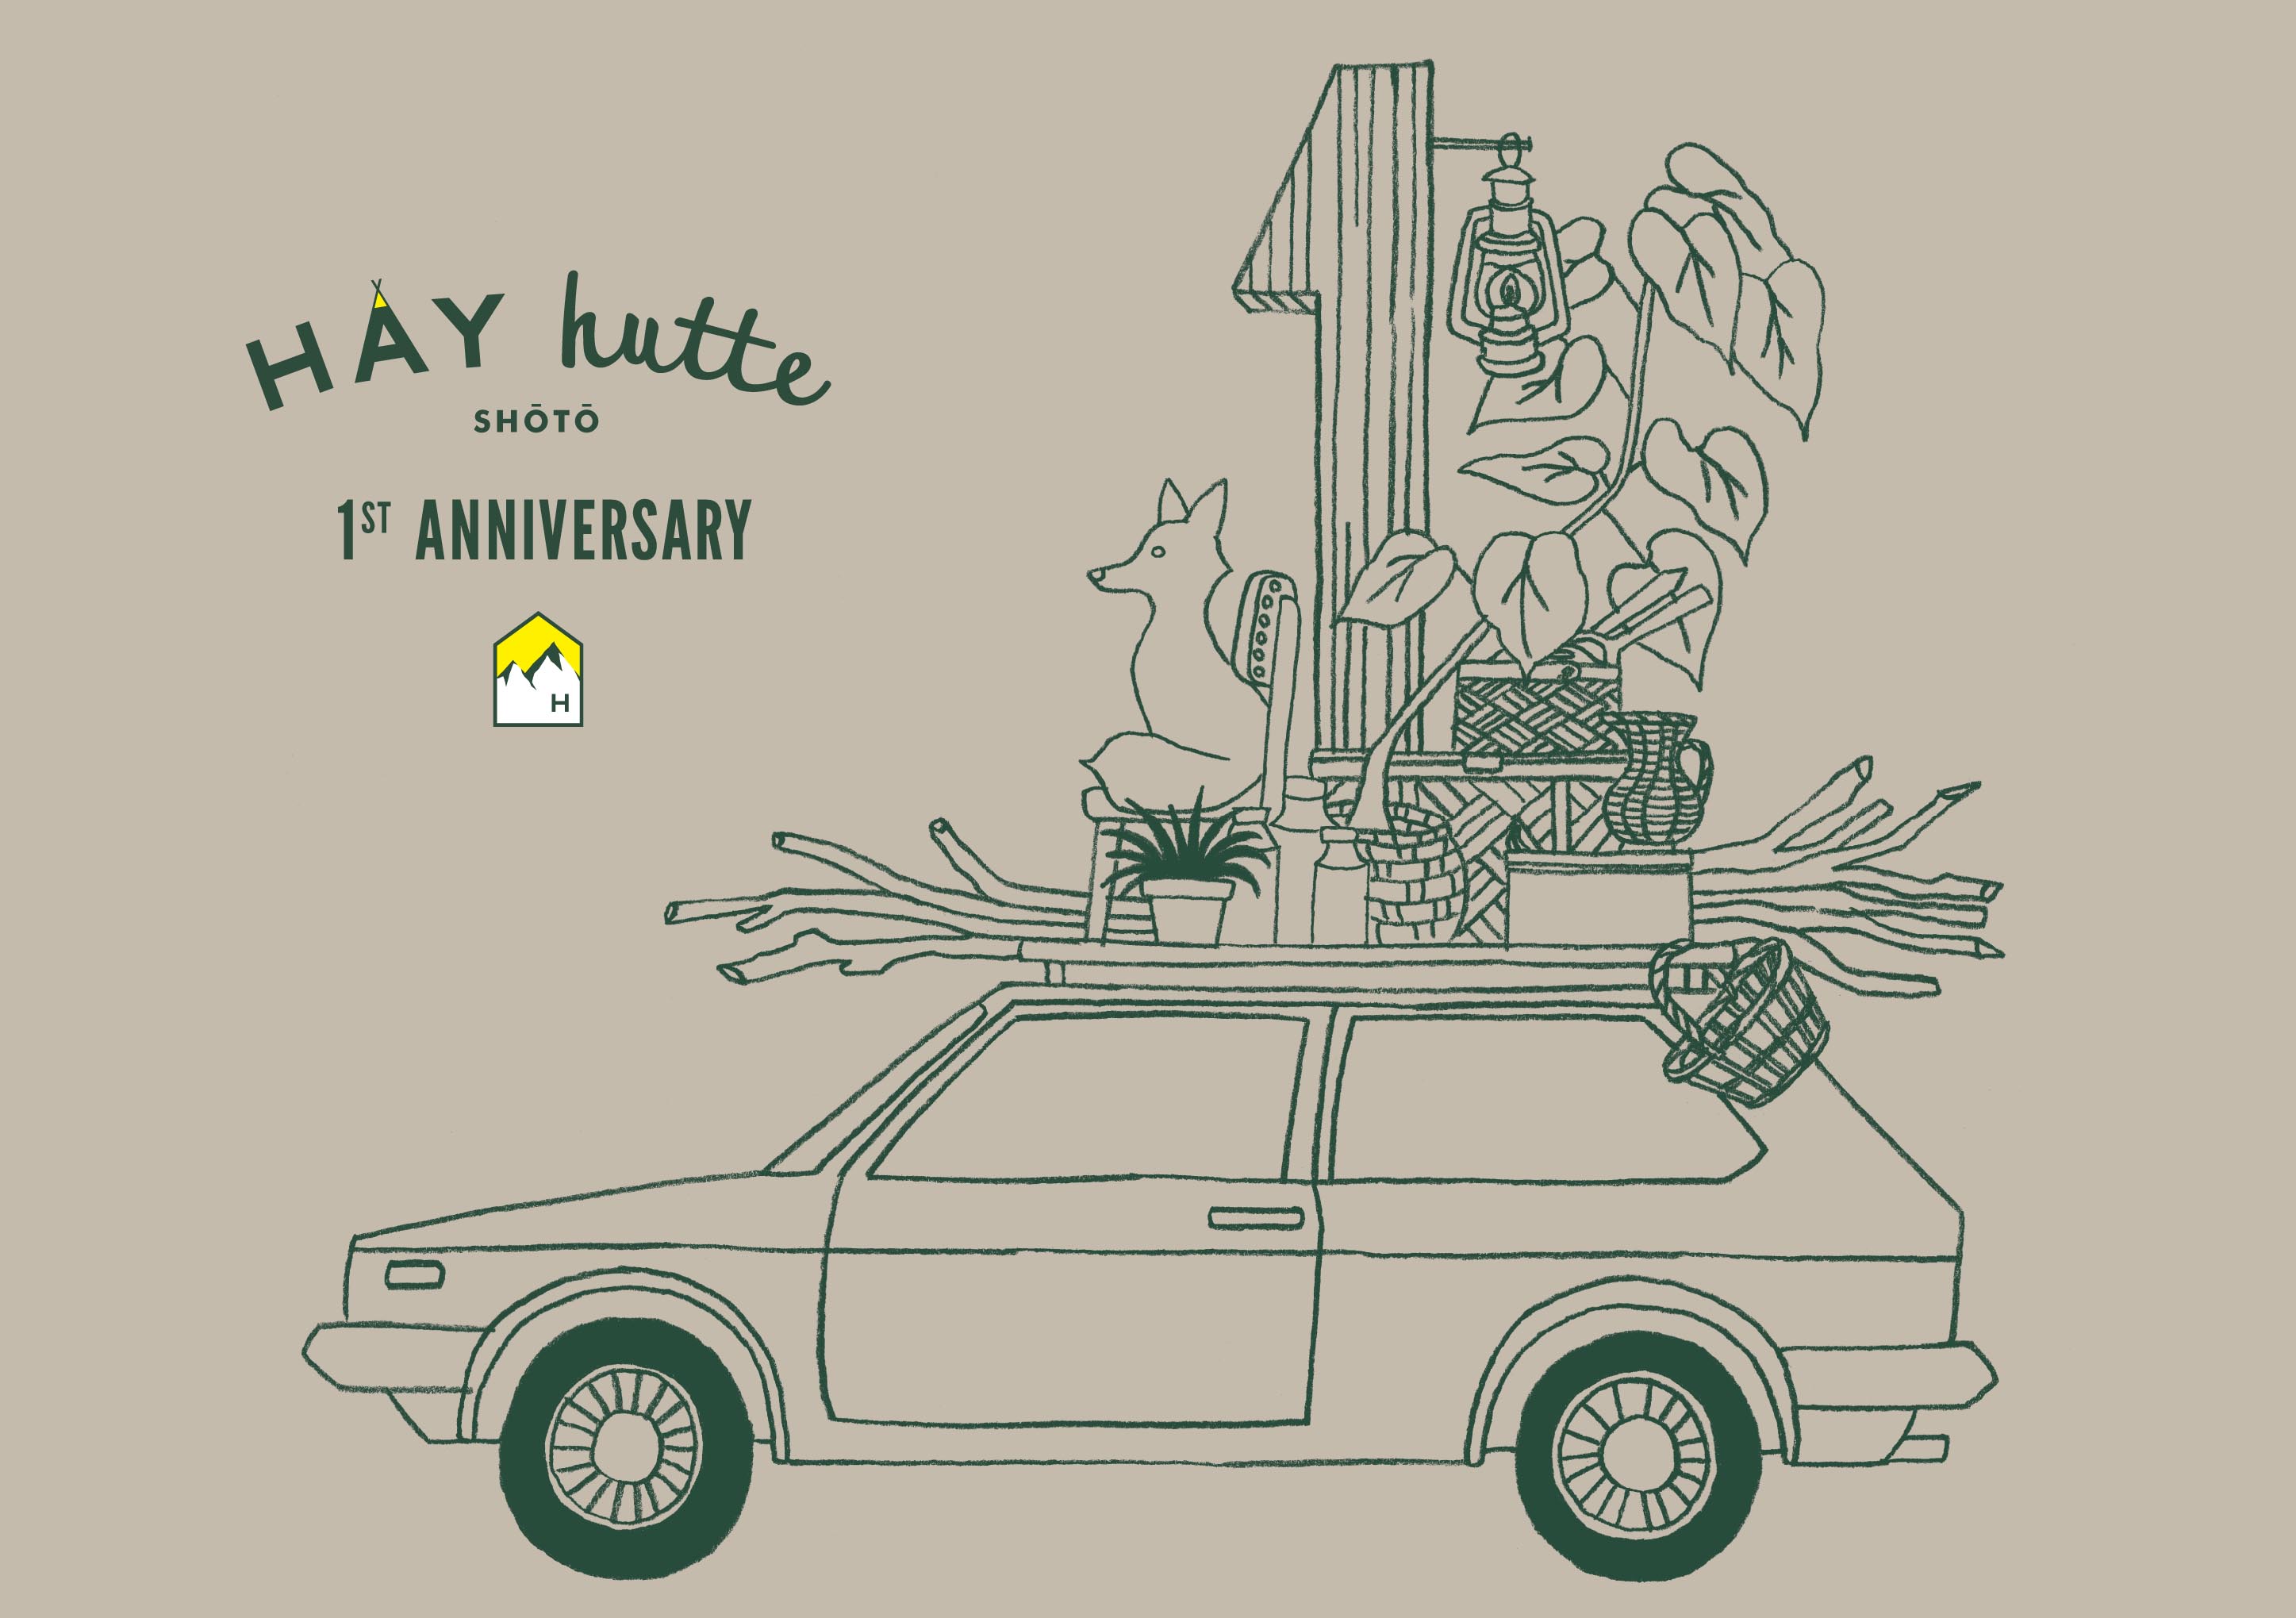 11/15（土）HAY hutte shoto 1st Anniversary!!_b0156872_1332455.jpg